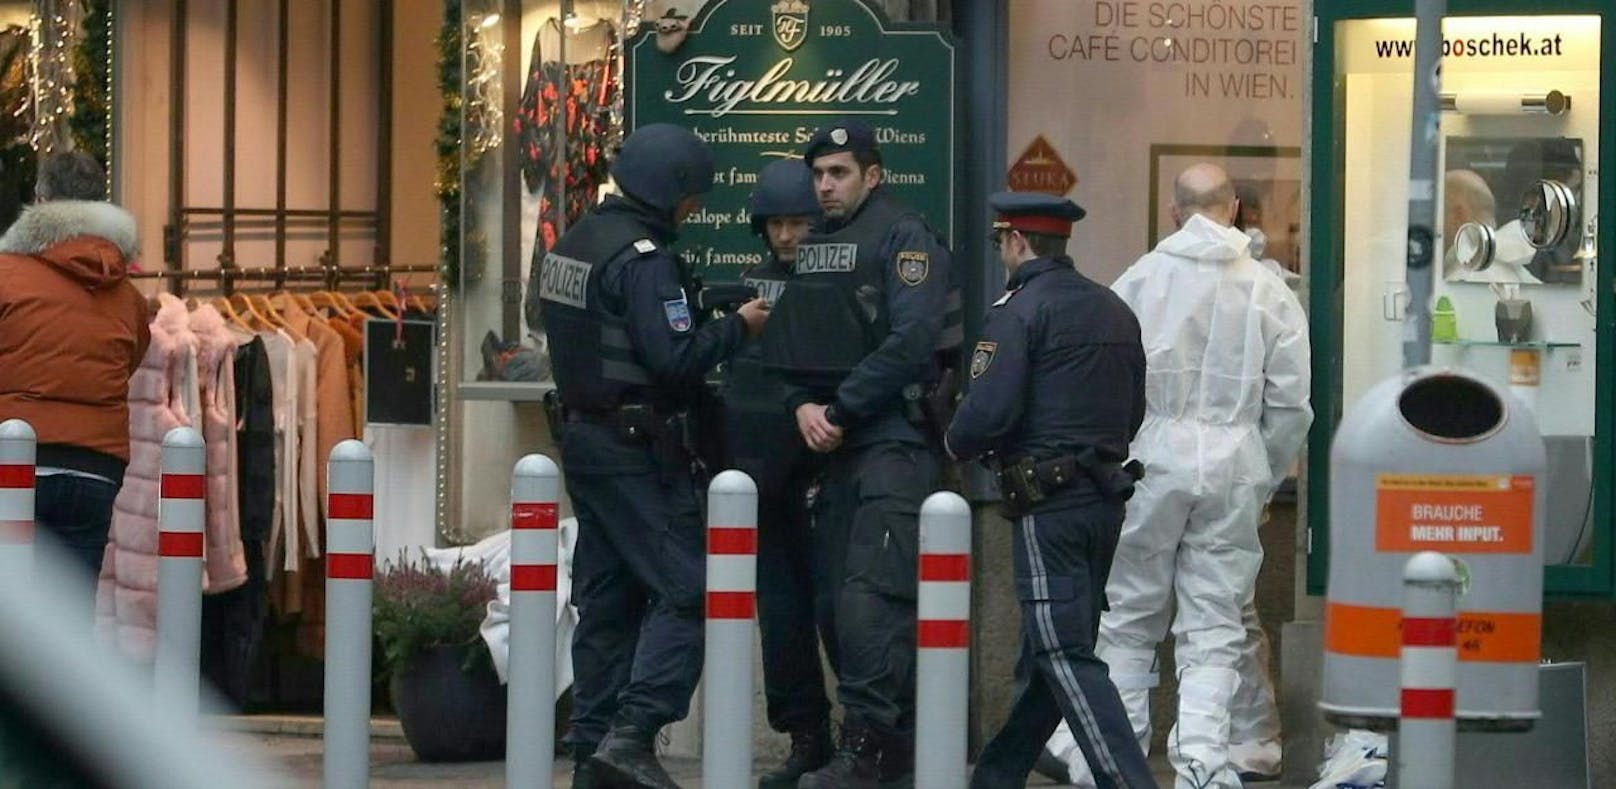 Mafia-Mord: Projektil traf Schädel des 23-Jährigen - Wien | heute.at